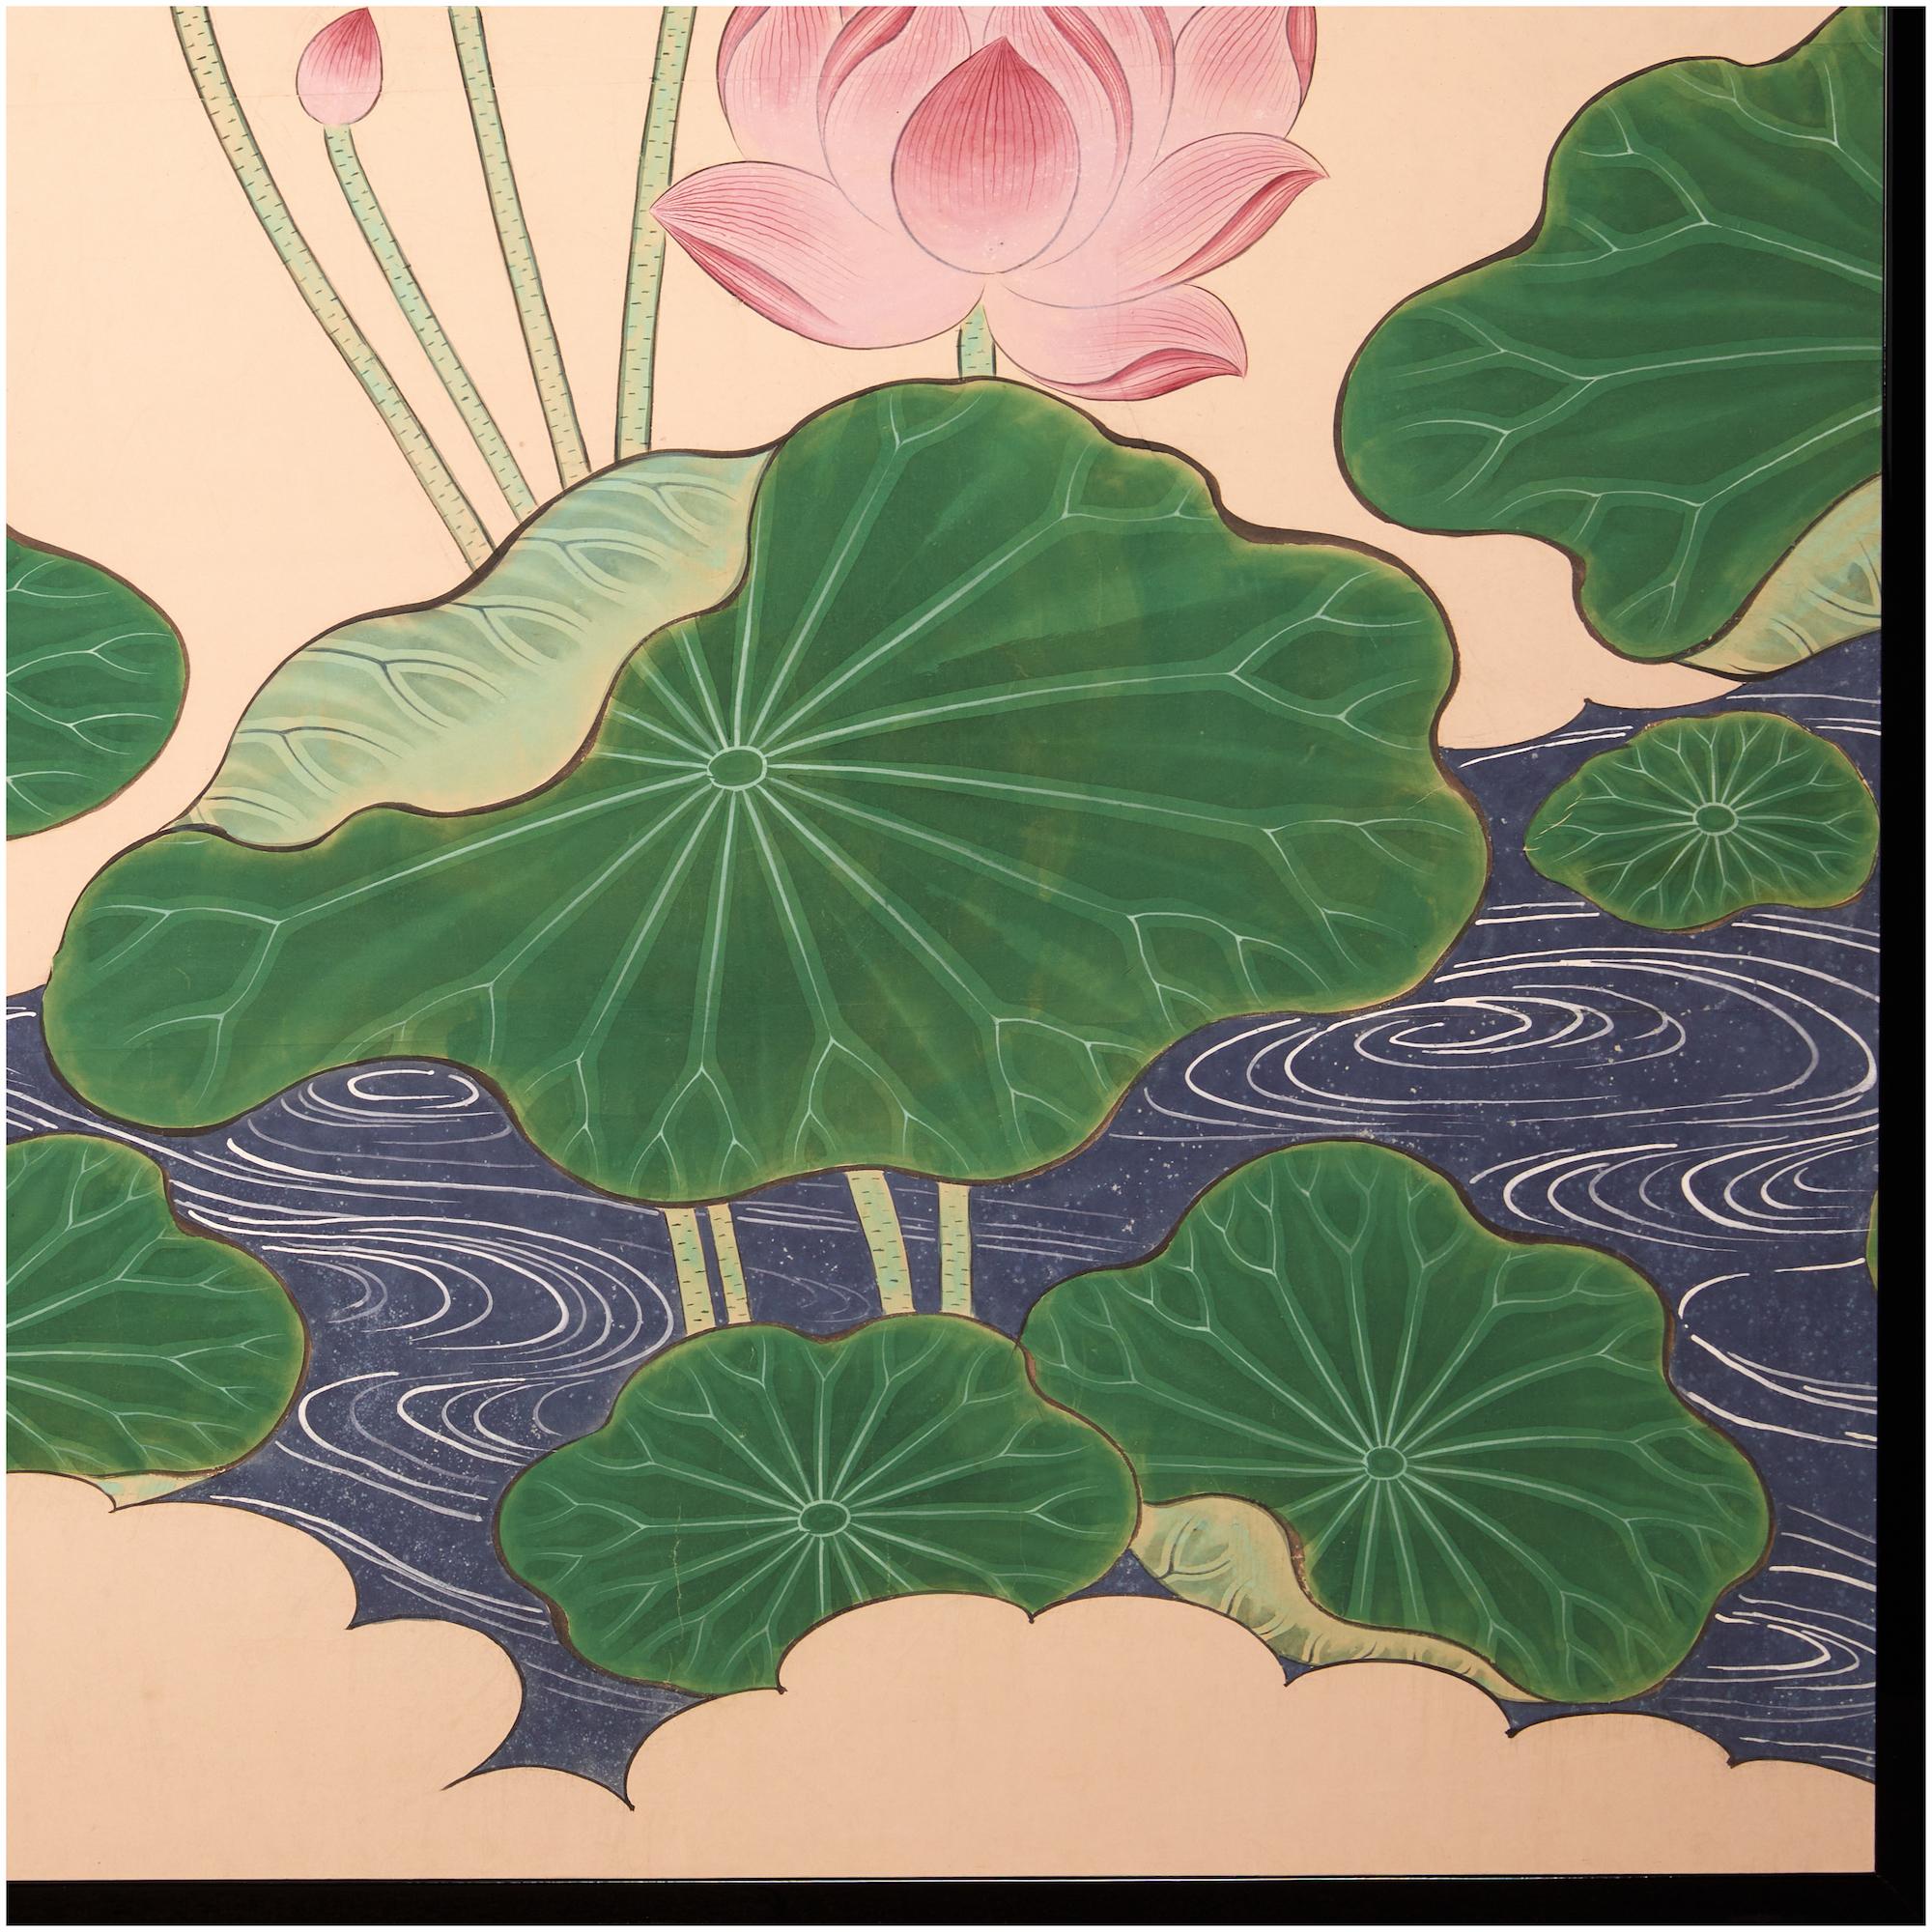 Eine Lotusszene mit blühenden Blumen, die auf der Wasseroberfläche schwimmen. Wie der Lotus von unten aufsteigt für einen erleuchtenden Prozess, der eine Fülle von Reinheit und Schönheit bringt.  Mineralpigmente auf Maulbeerpapier mit schwarzem